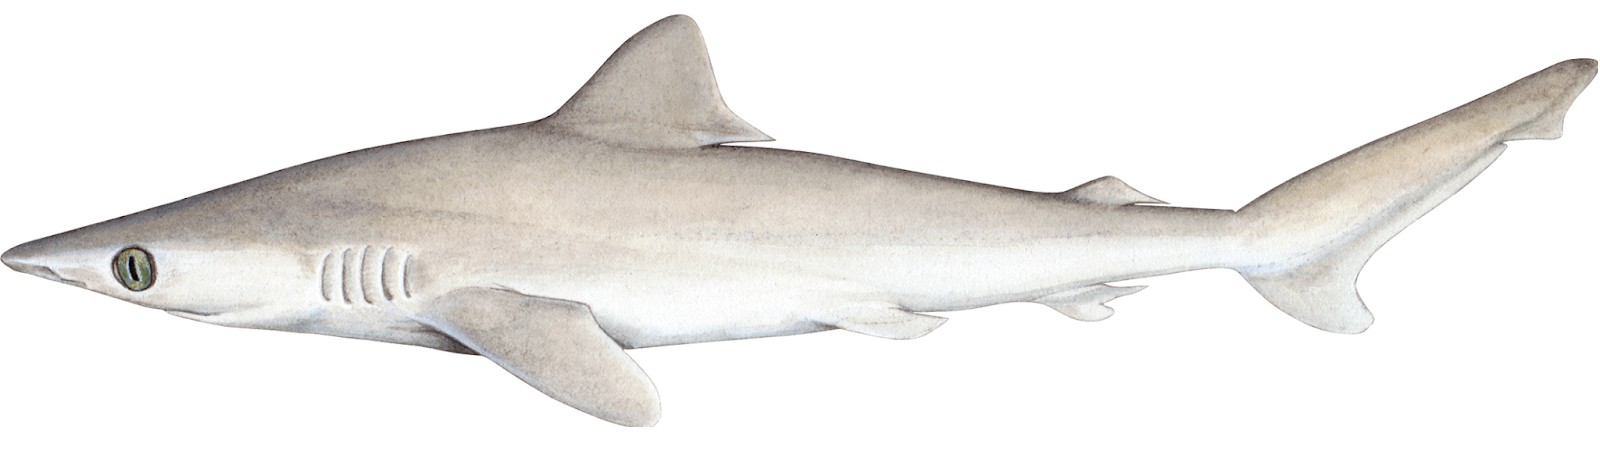 Tubarão Carcharhinus obsoletus, que está ameaçado de extinção (Foto: Wikimedia Commons )